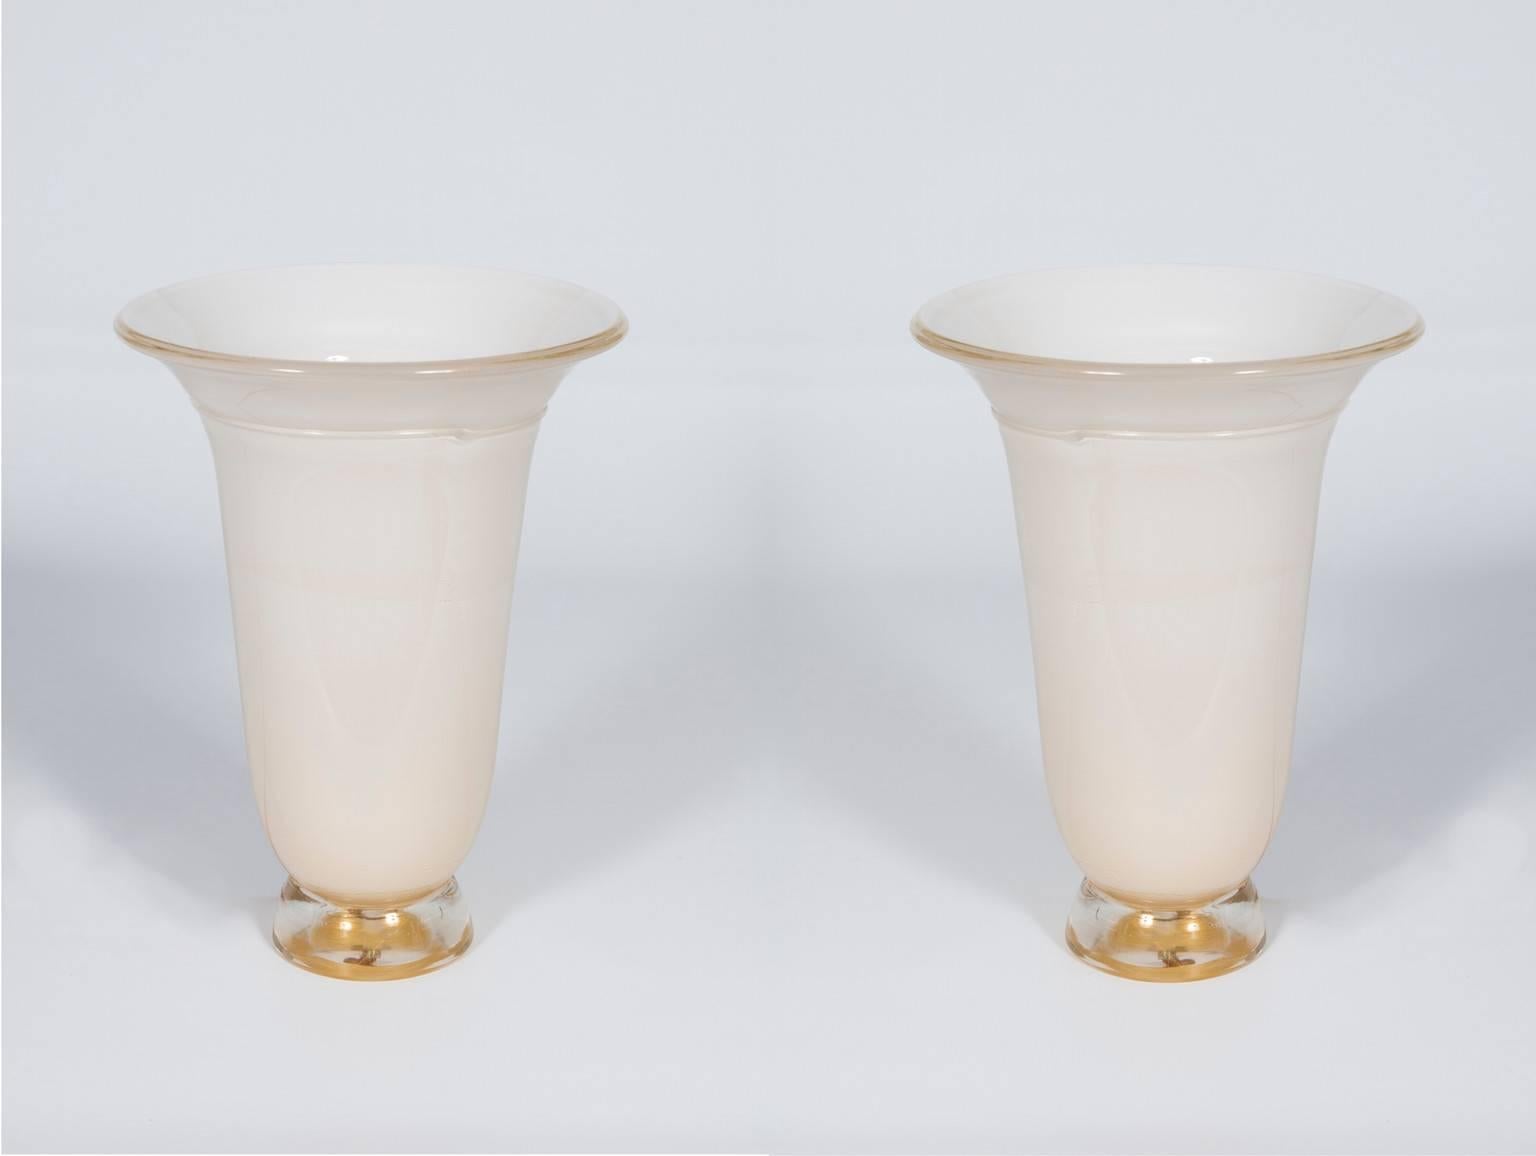 Vénitienne italienne, paire de lampes de table, en verre muraille soufflé, blanc et or,  1980s.
Il s'agit d'un ensemble unique, de lampes de table en verre de Murano soufflé à la main, en forme de vase, de couleur blanc laiteux submergé dans une